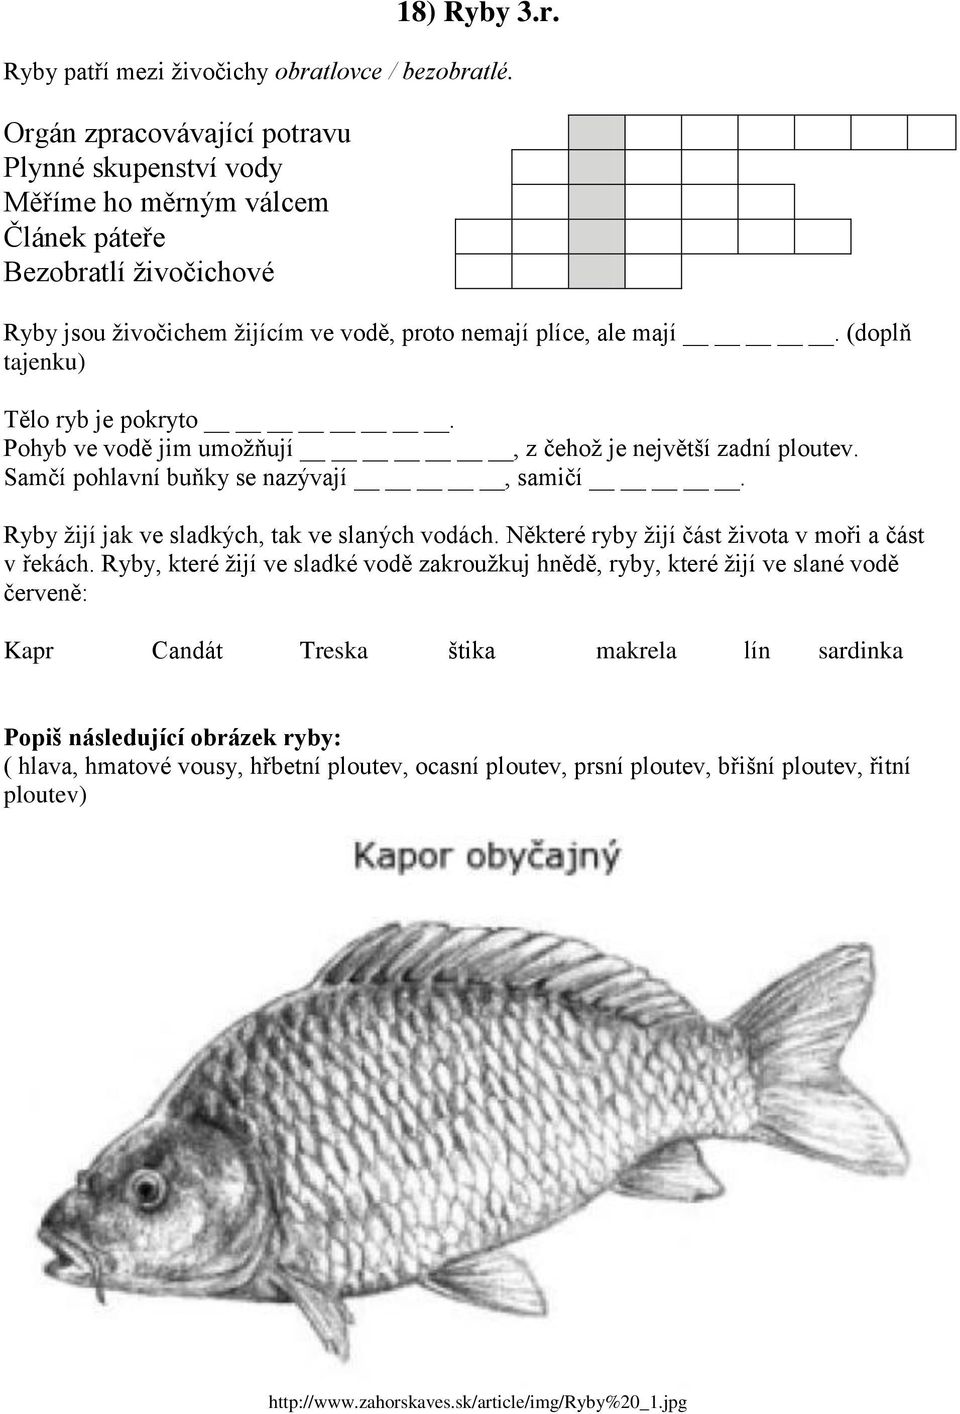 (doplň tajenku) Tělo ryb je pokryto. Pohyb ve vodě jim umožňují, z čehož je největší zadní ploutev. Samčí pohlavní buňky se nazývají, samičí. Ryby žijí jak ve sladkých, tak ve slaných vodách.